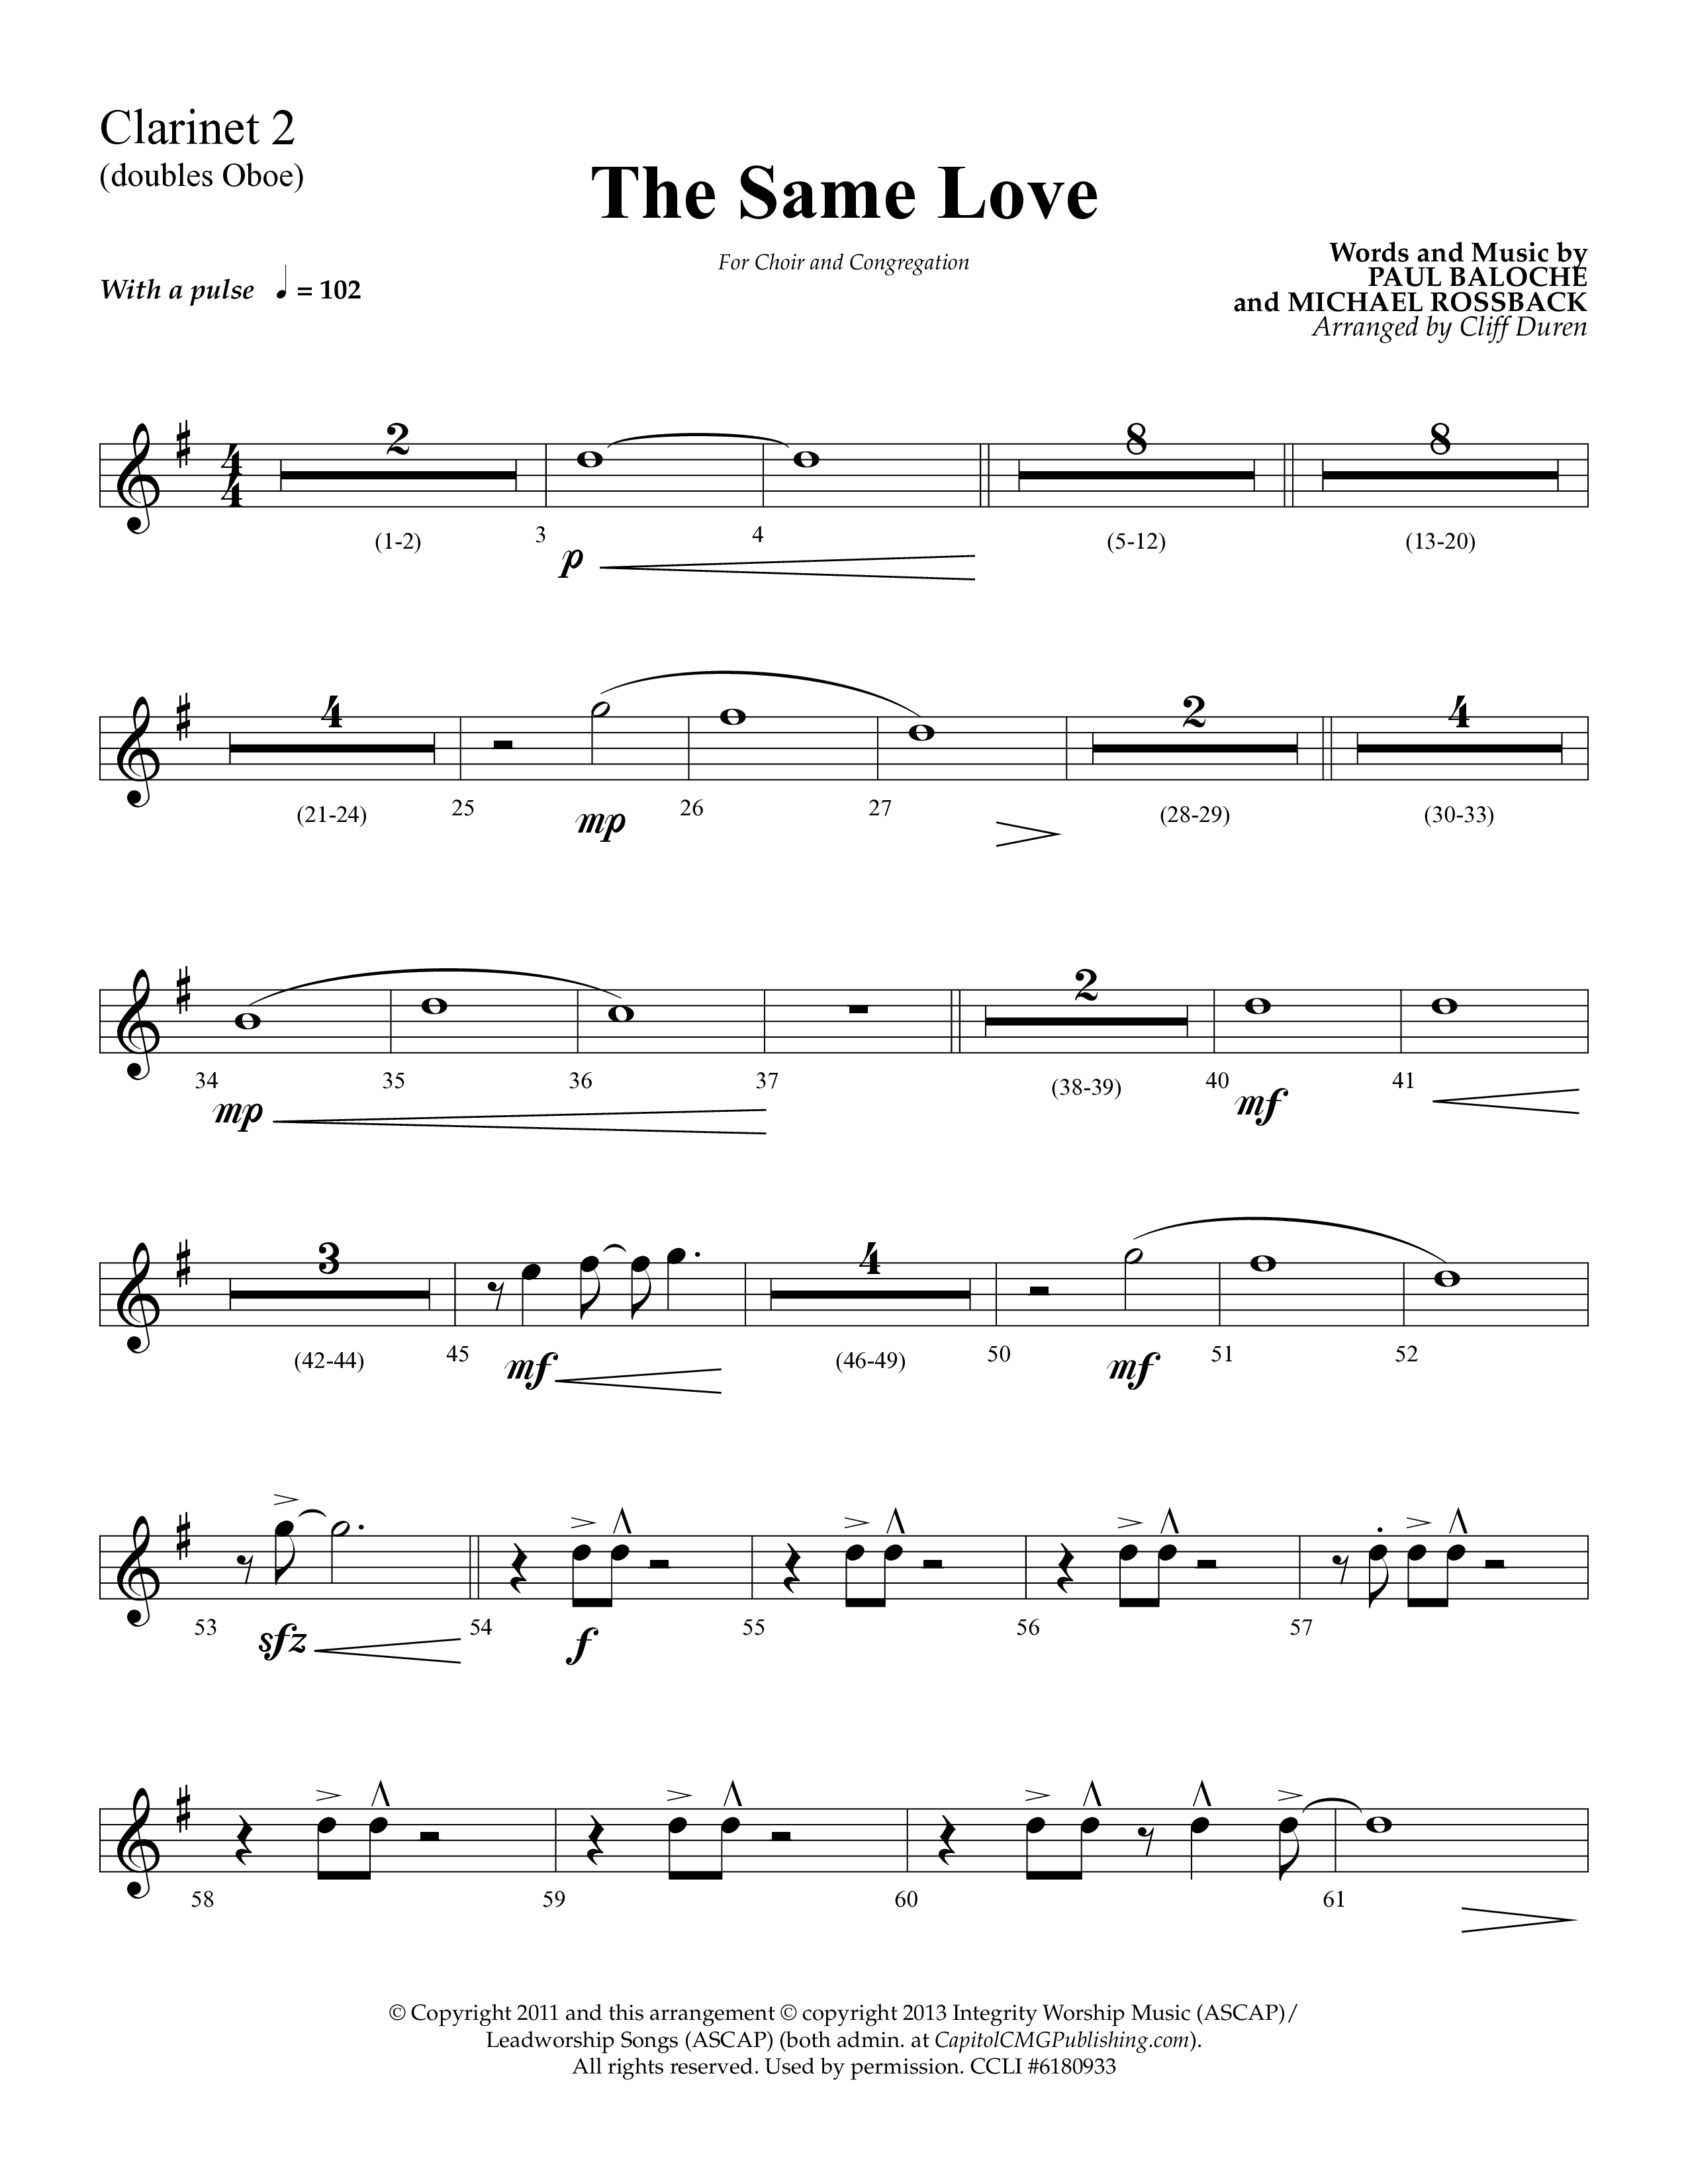 The Same Love (Choral Anthem SATB) Clarinet 1/2 (Lifeway Choral / Arr. Cliff Duren)